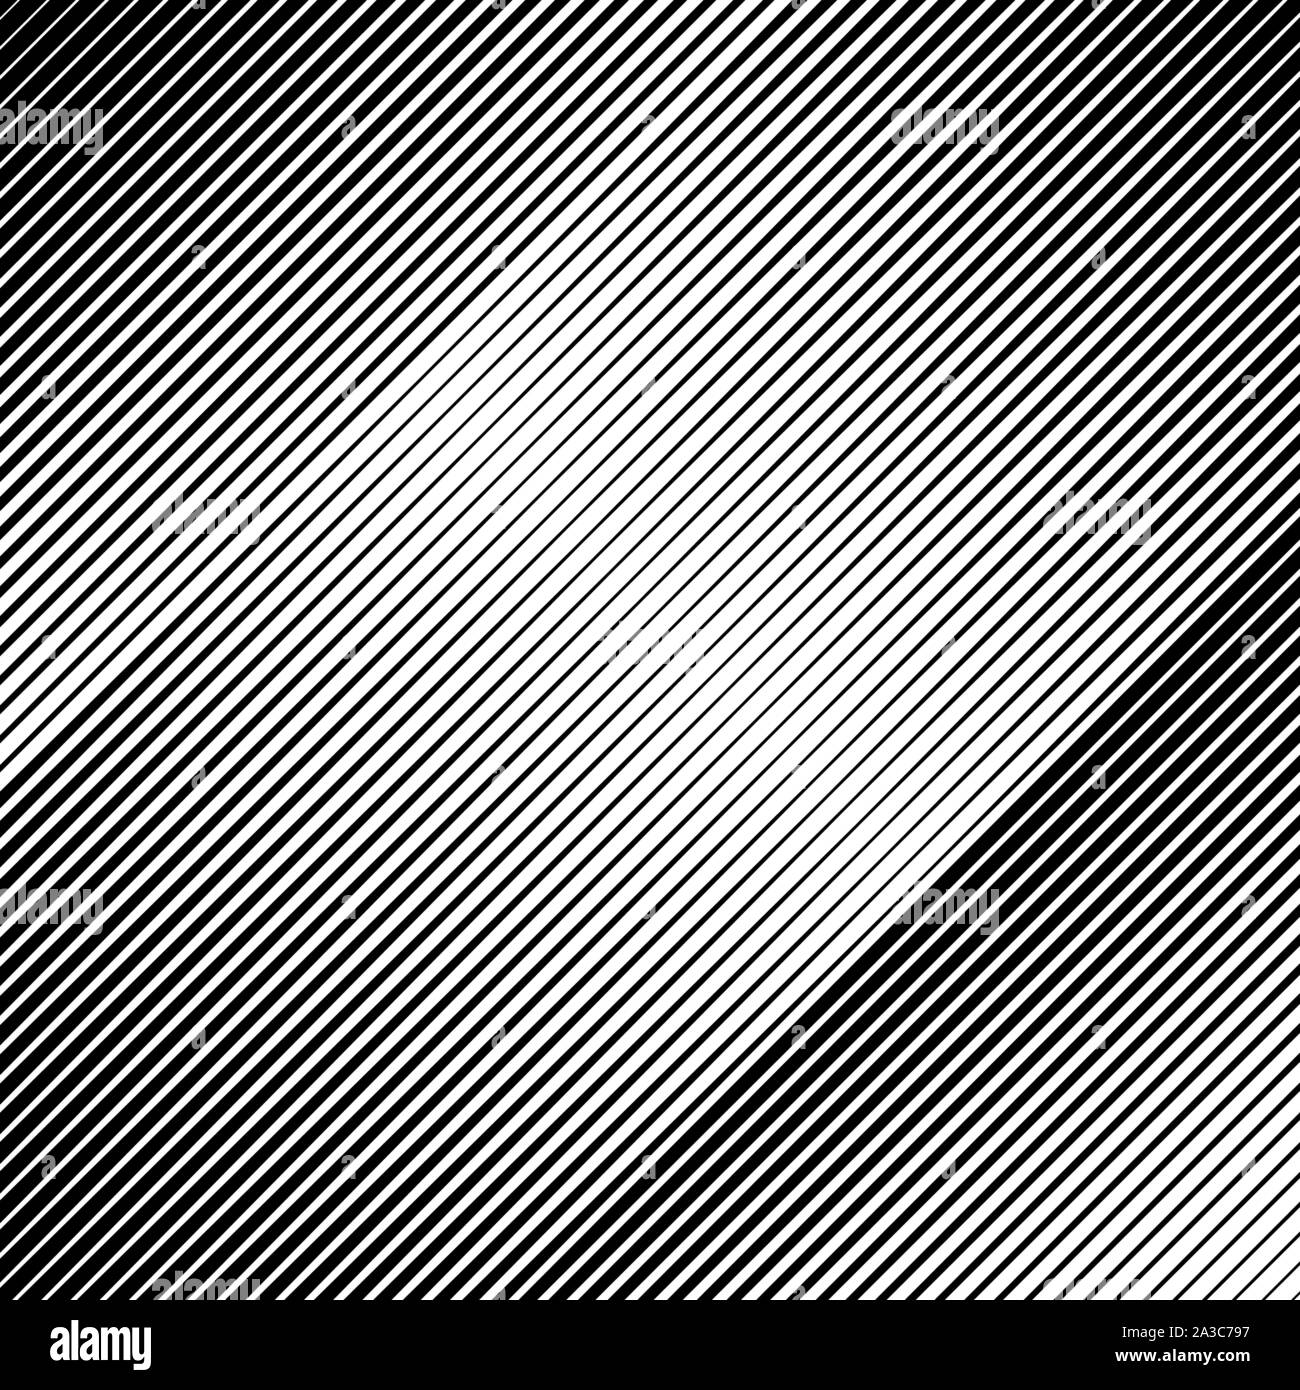 Halbton Hintergrund. Gewellt, zig-zag diagonal parallelen Linien. Abstrakte Schwarz-Weiß-Muster. Vector Illustration. Stock Vektor